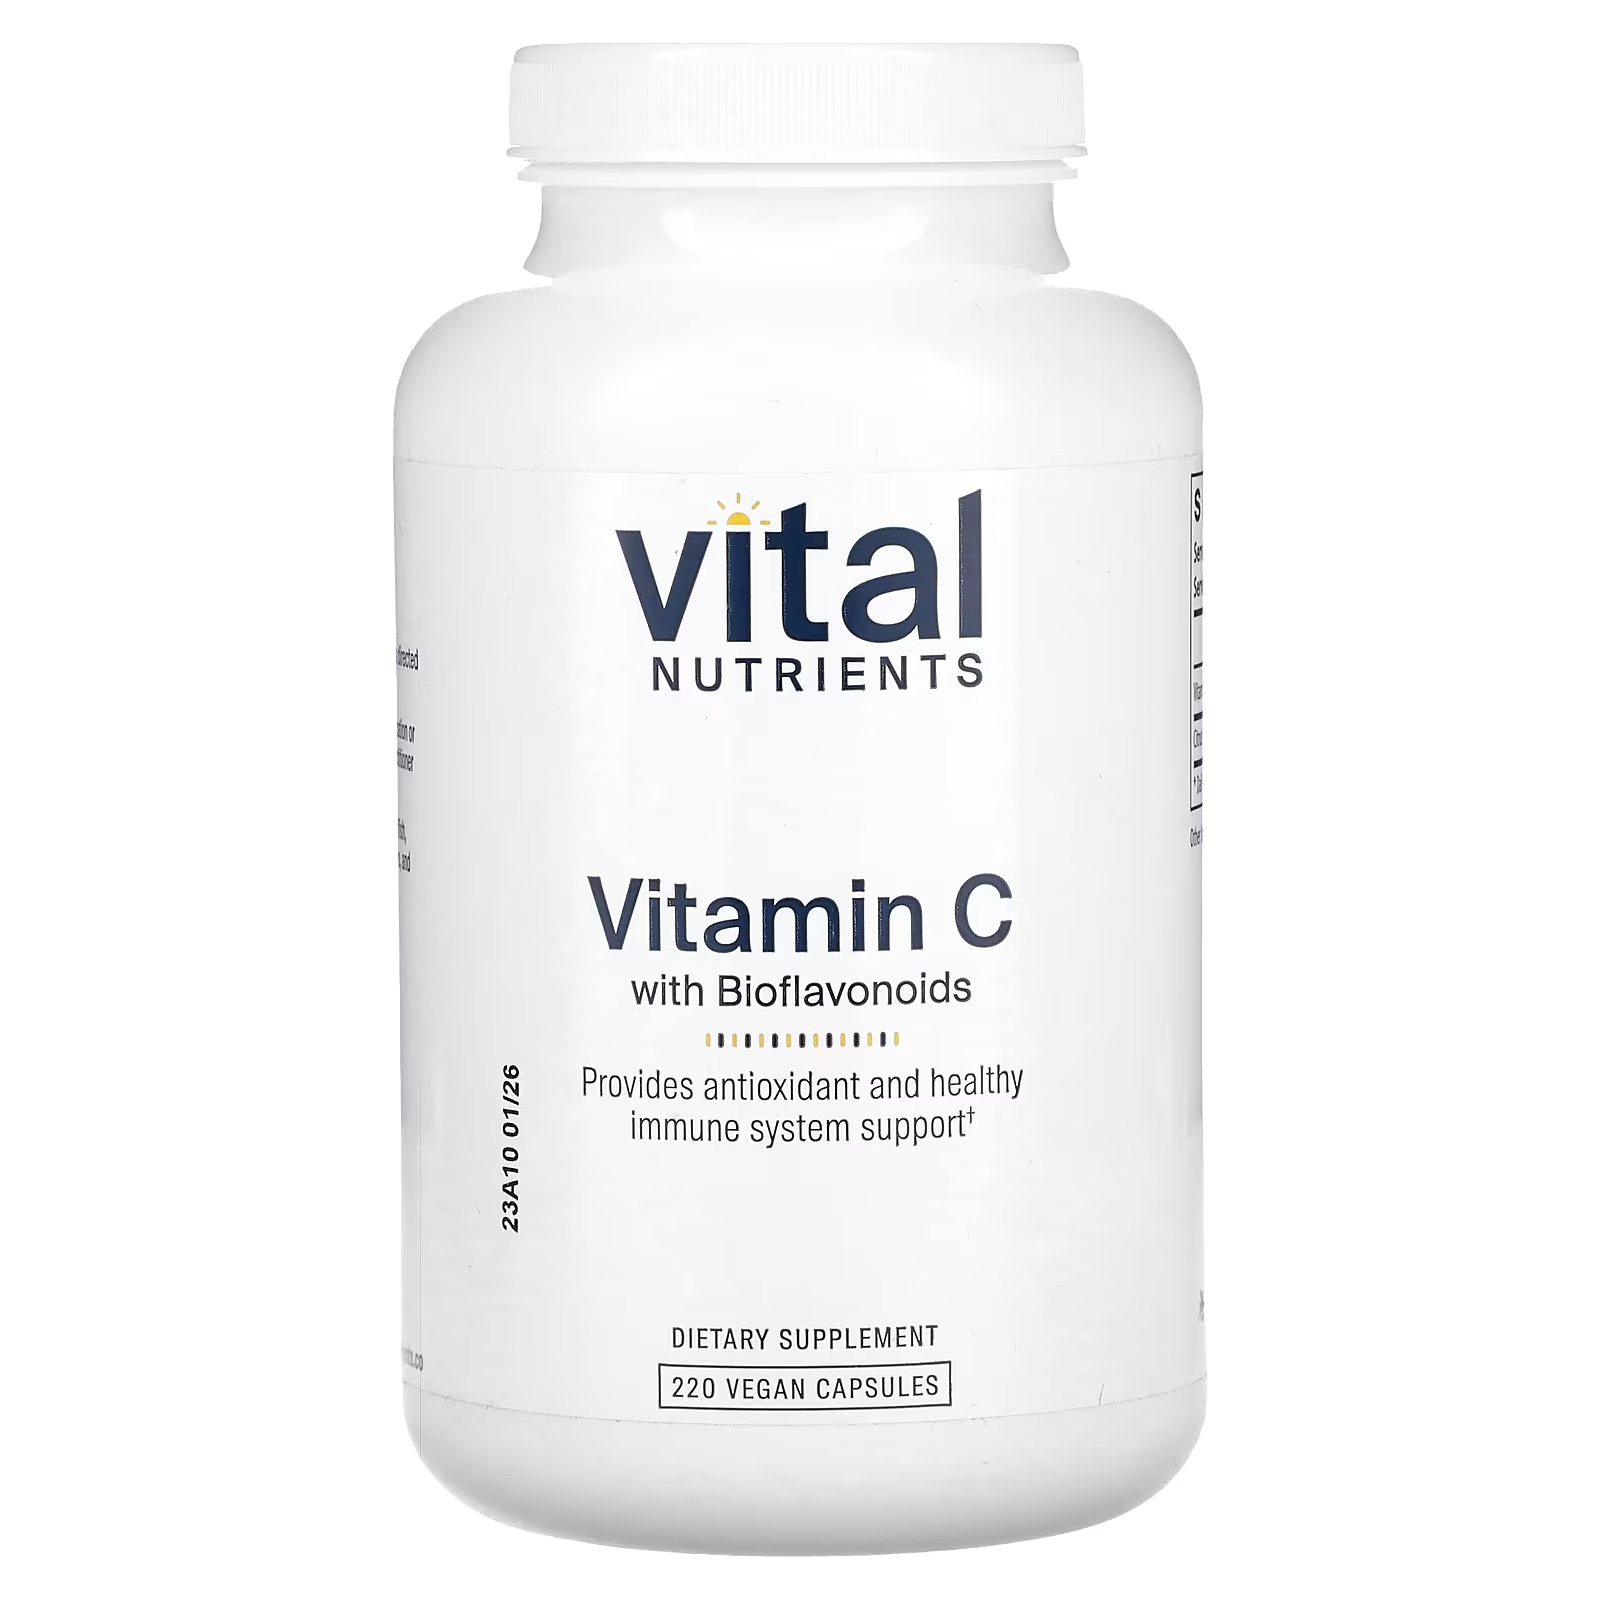 Витамин С с биофлавоноидами Vital Nutrients, 220 капсул витамин с swanson с биофлавоноидами 90 капсул